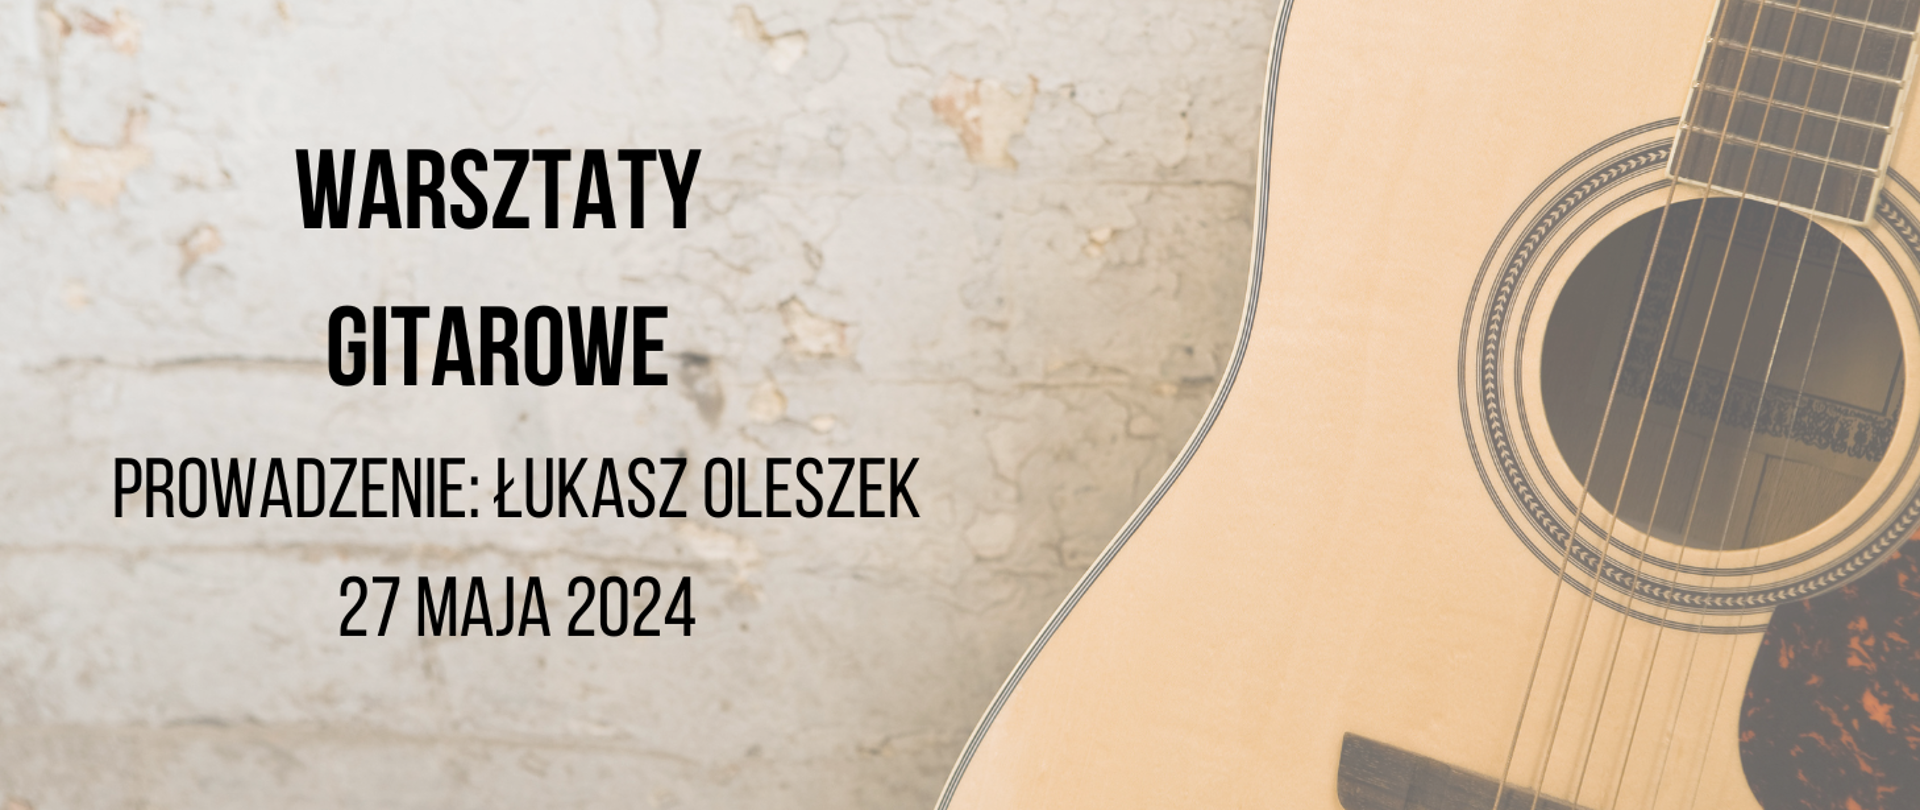 Plakat informujący o warsztatach dla gitarzystów w dniu 27 maja 2024, warsztaty poprowadzi pan Łukasz Oleszek. Z prawej strony cześć pudła rezonansowego gitary i otworem rezonansowym i strunami. Z lewej strony tekst w kolorze czarnym.